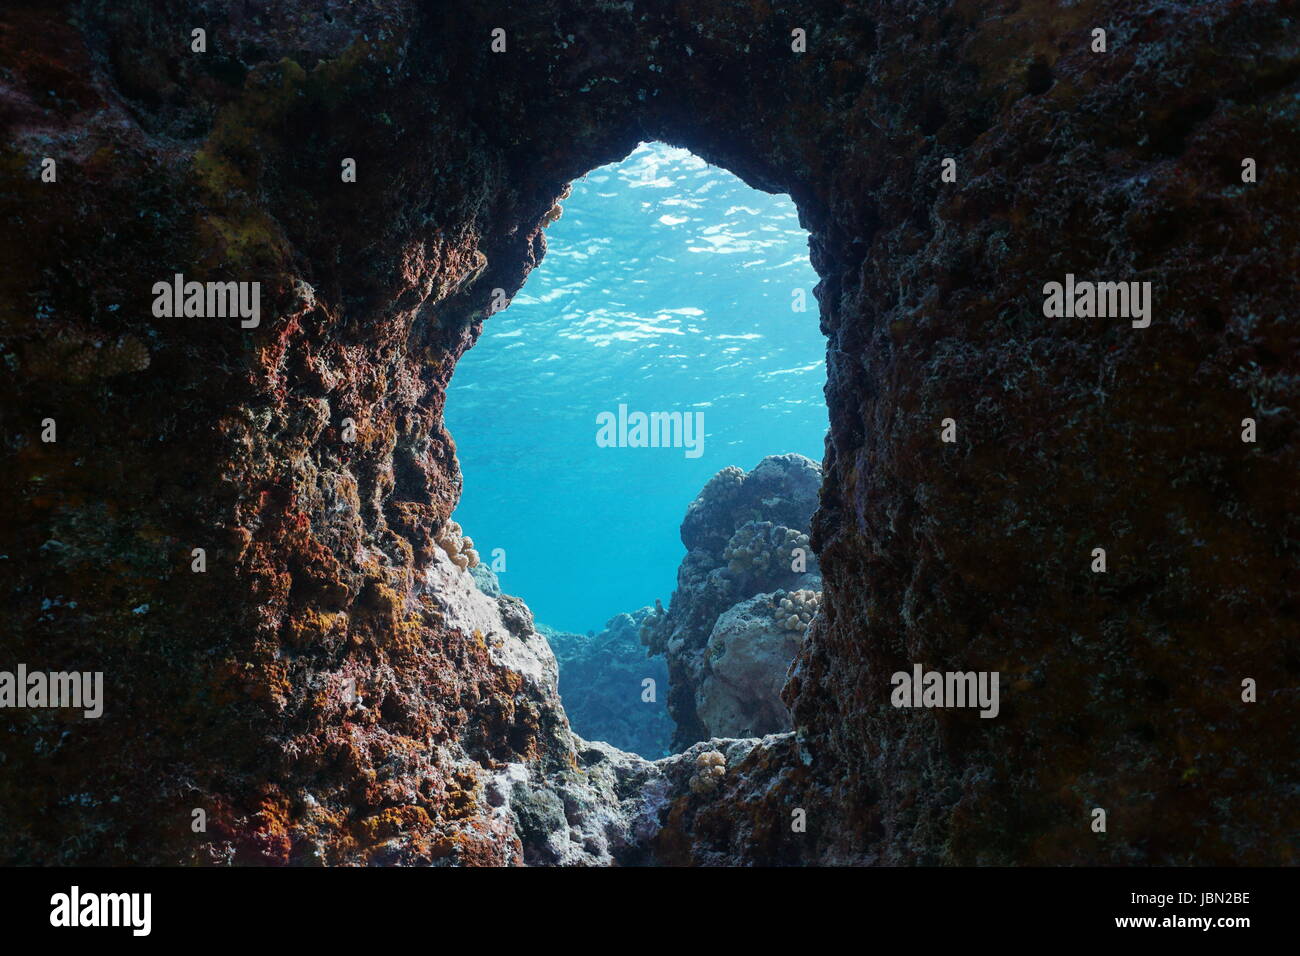 Un foro nella roccia subacquea oceano pacifico, scenario naturale, barriera corallina esterna dell'Isola di Moorea, Polinesia francese, Oceania Foto Stock